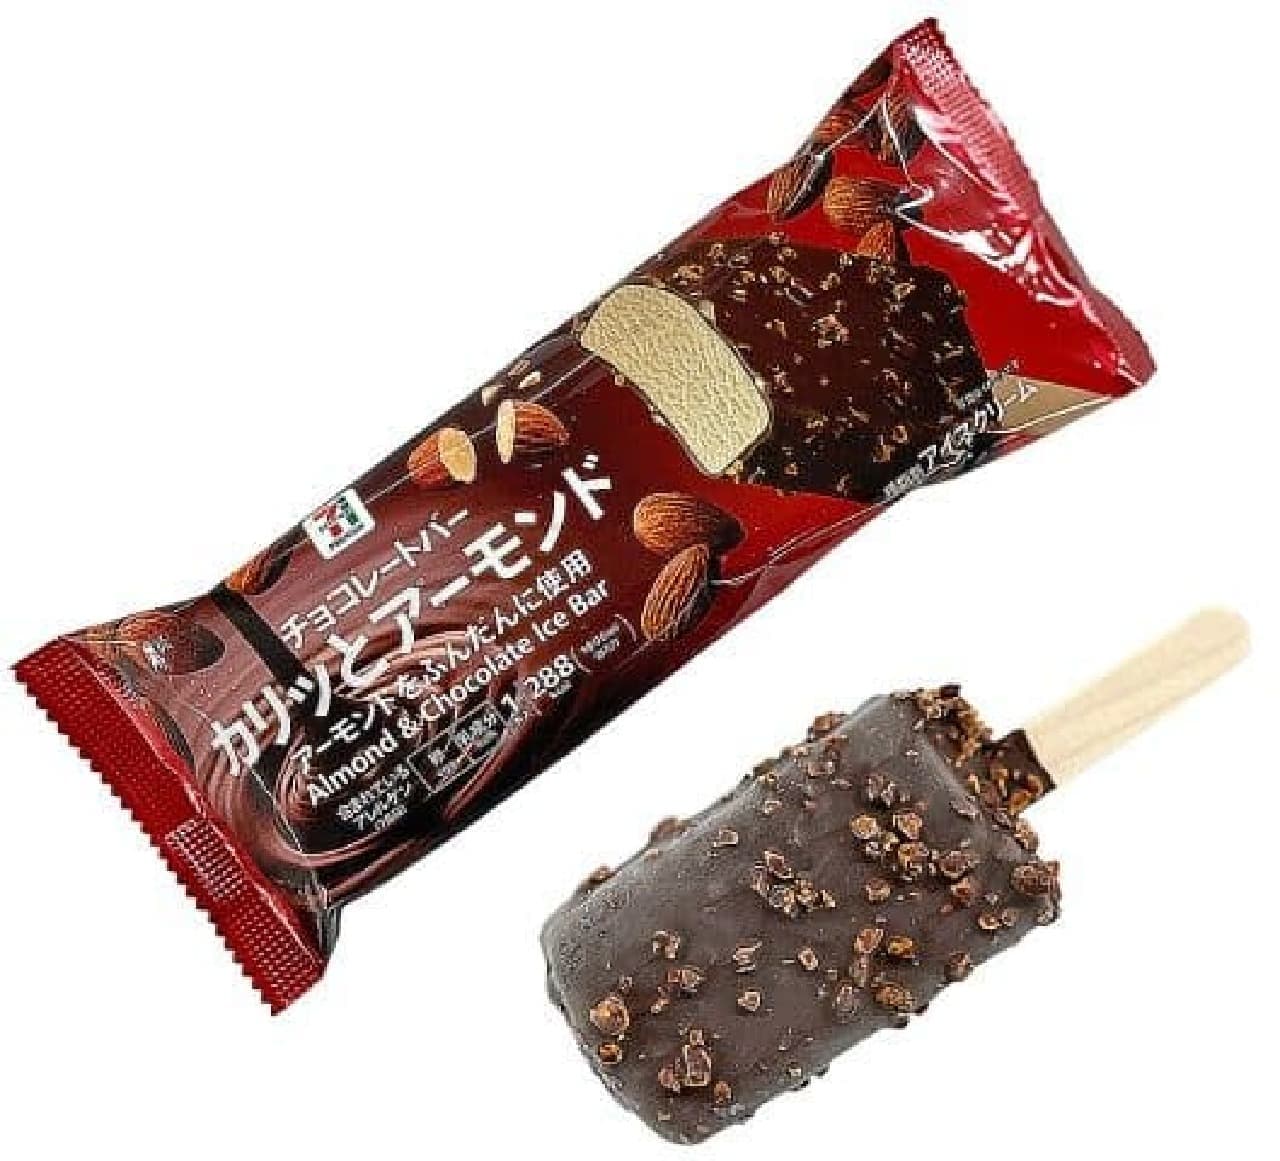 7-ELEVEN "7-ELEVEN Premium Almond Chocolate Bar